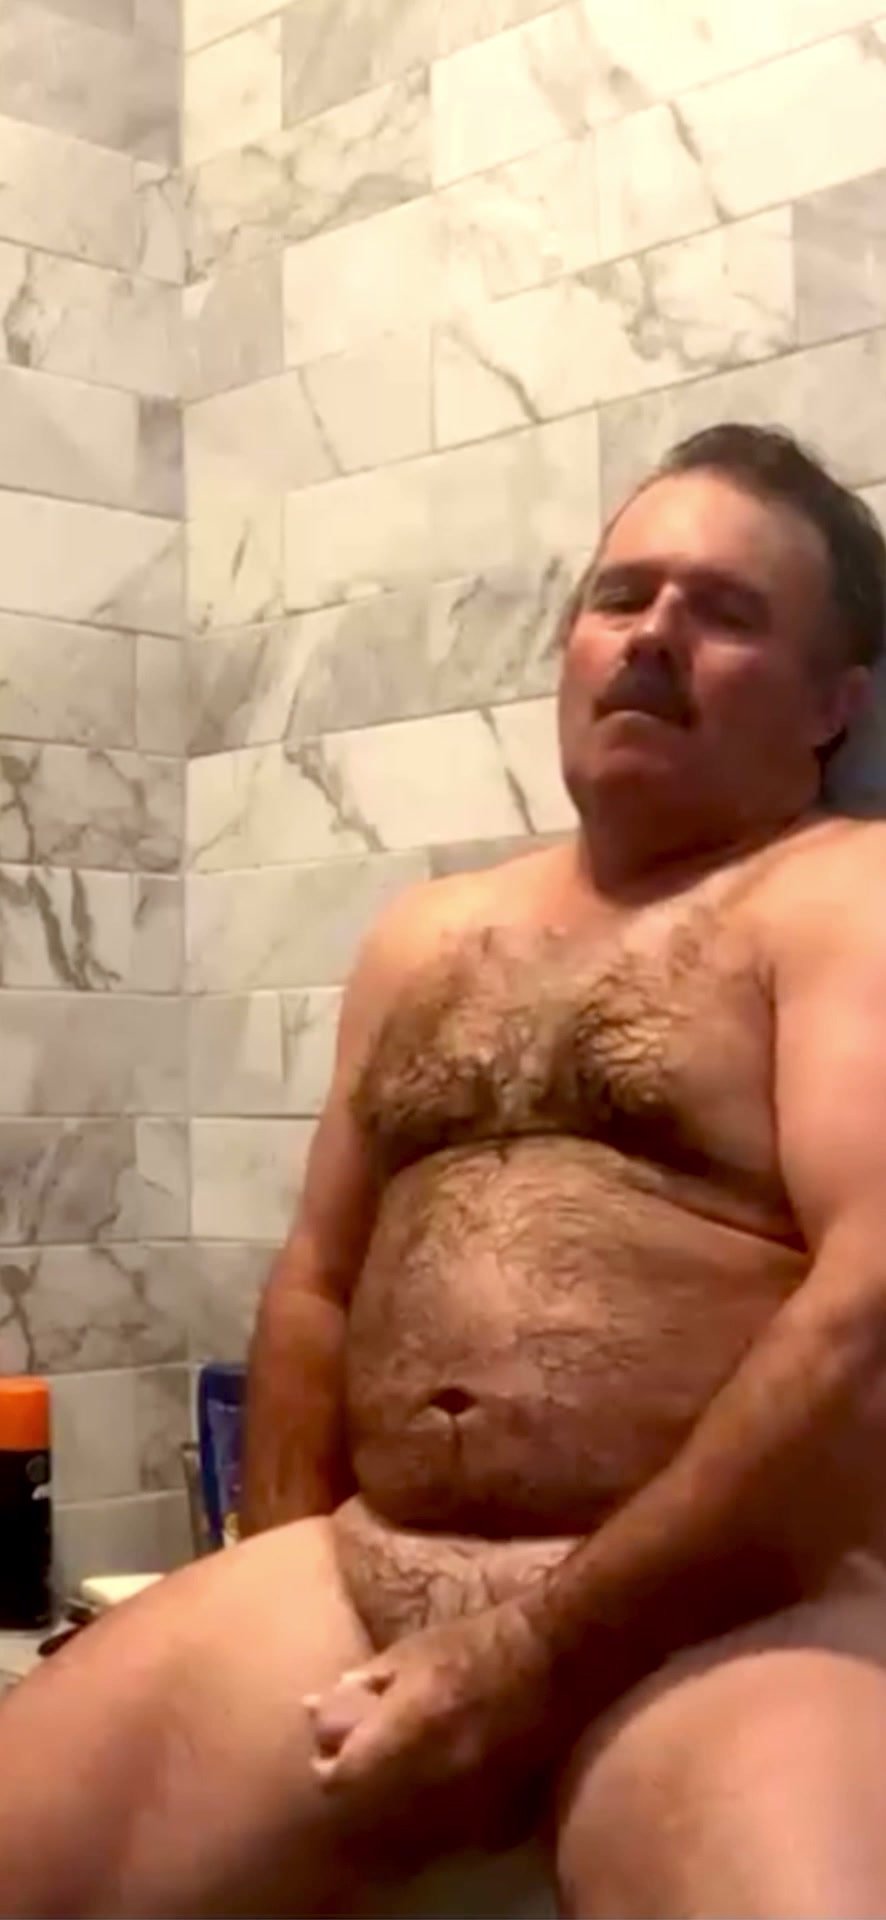 Bear in shower - video 4